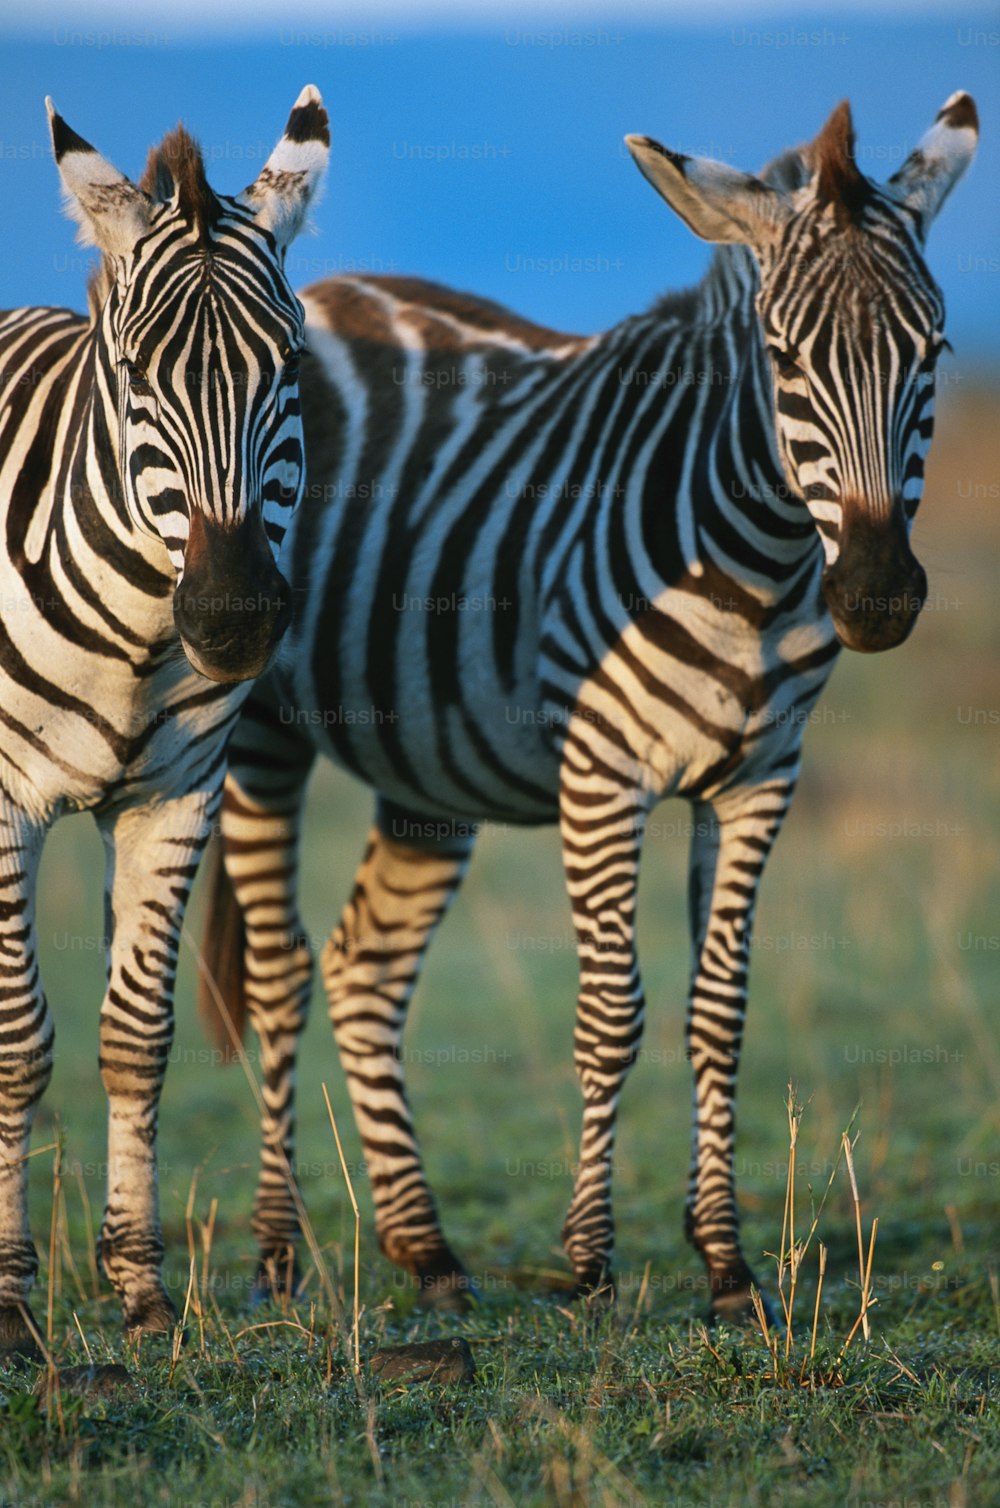 Ein paar Zebras, die nebeneinander auf einem Feld stehen